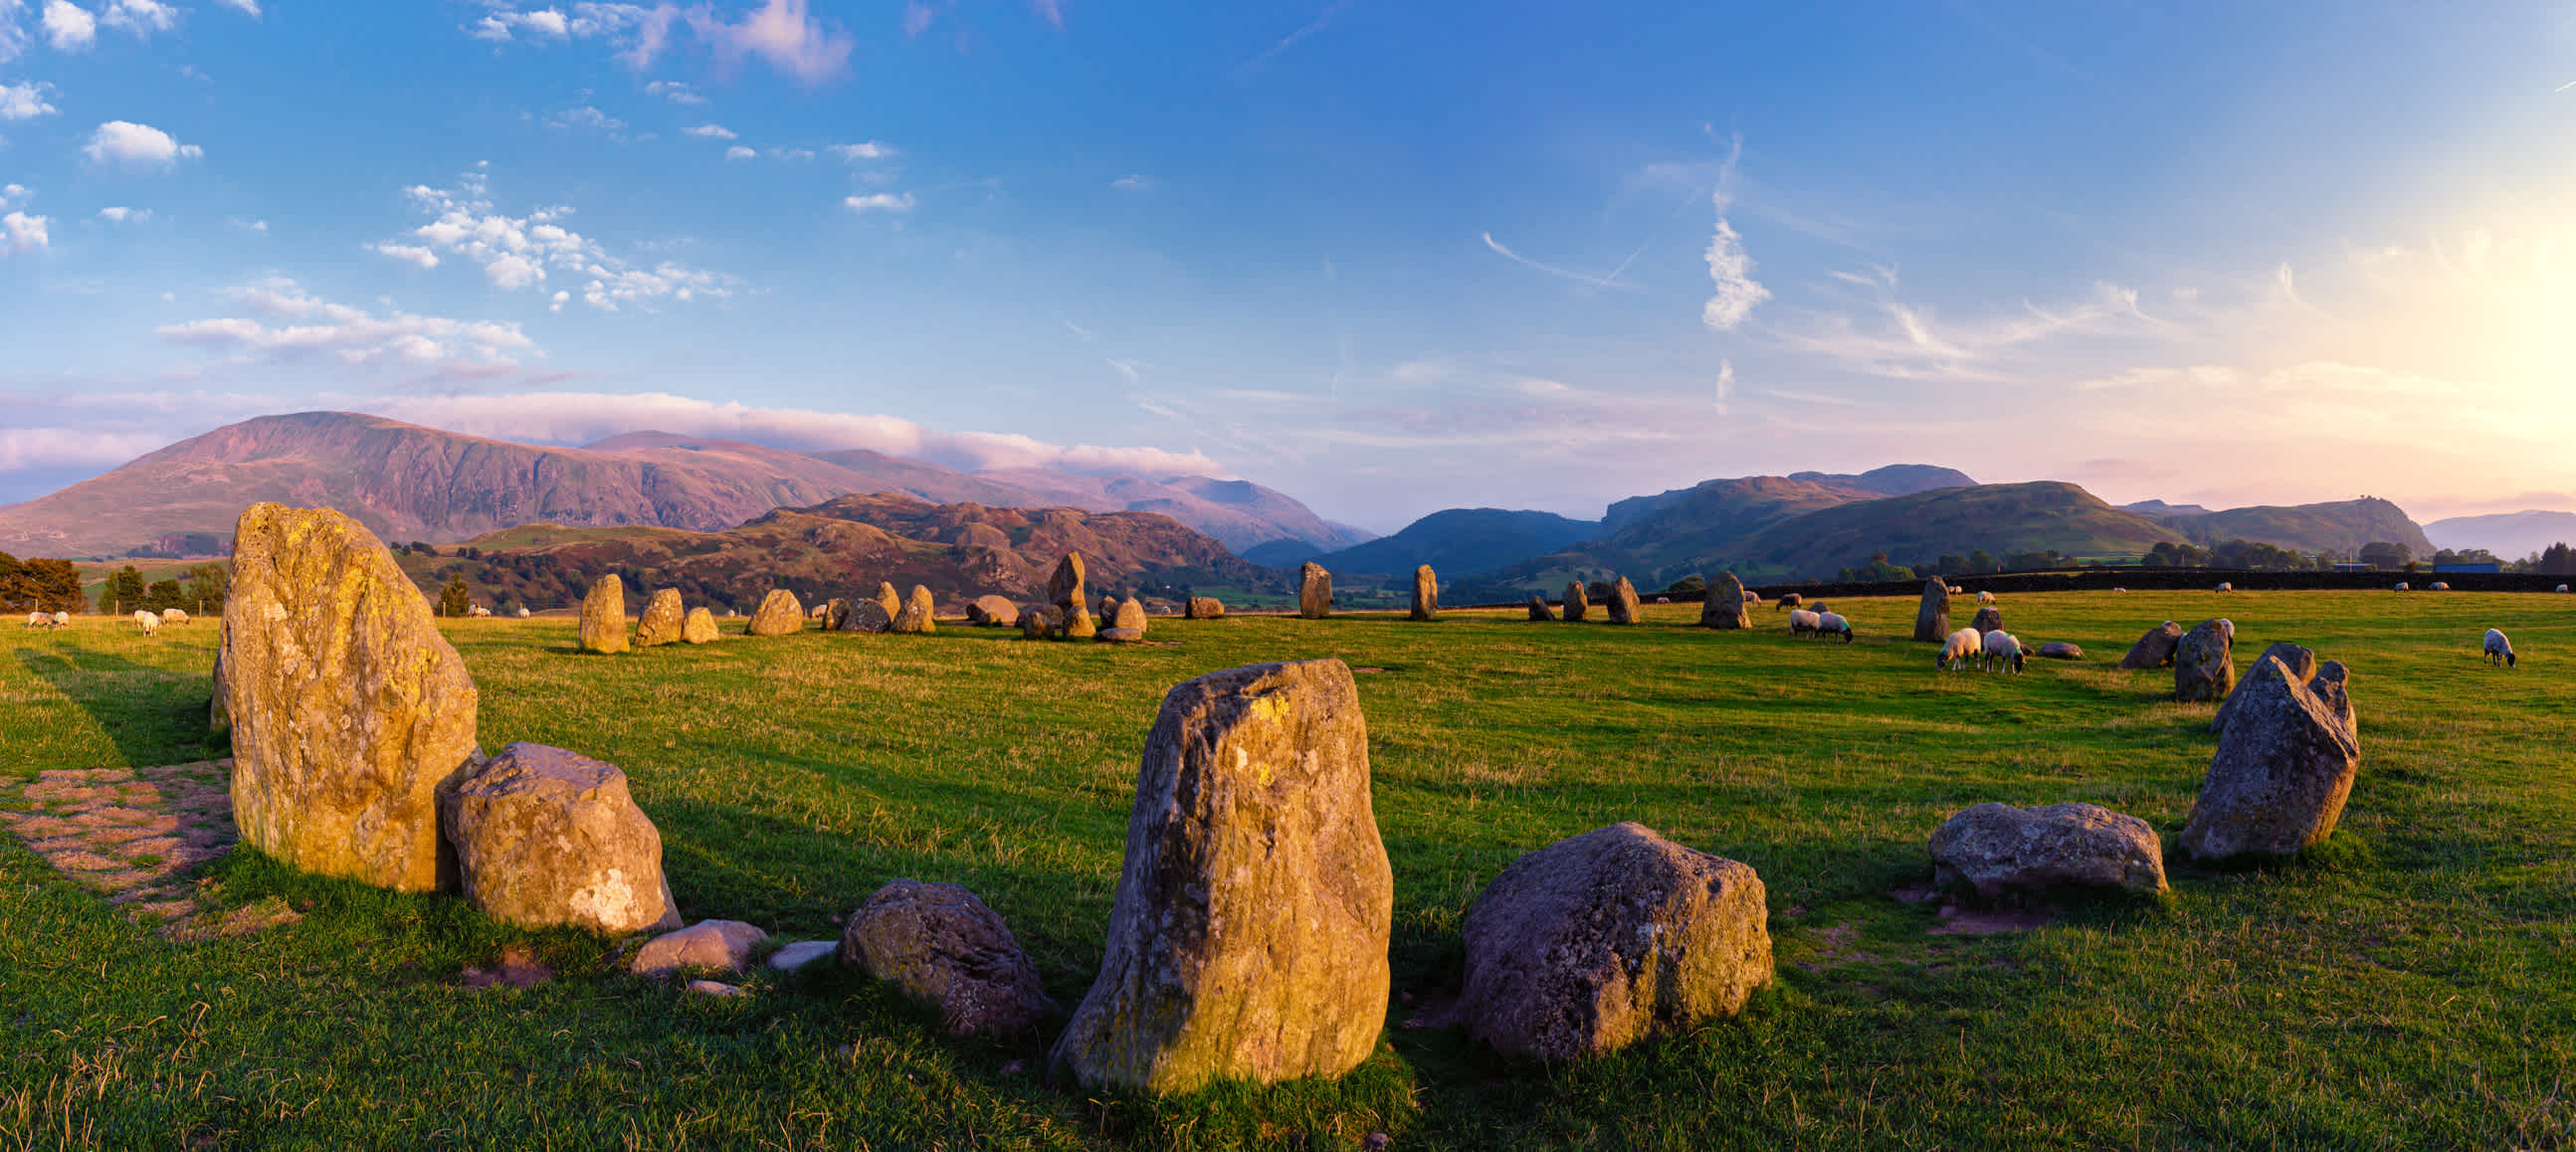 Berühmtes neolithisches Monument aus 38 Steinen, das wahrscheinlich etwa 5000 Jahre alt ist, im Lake District in England